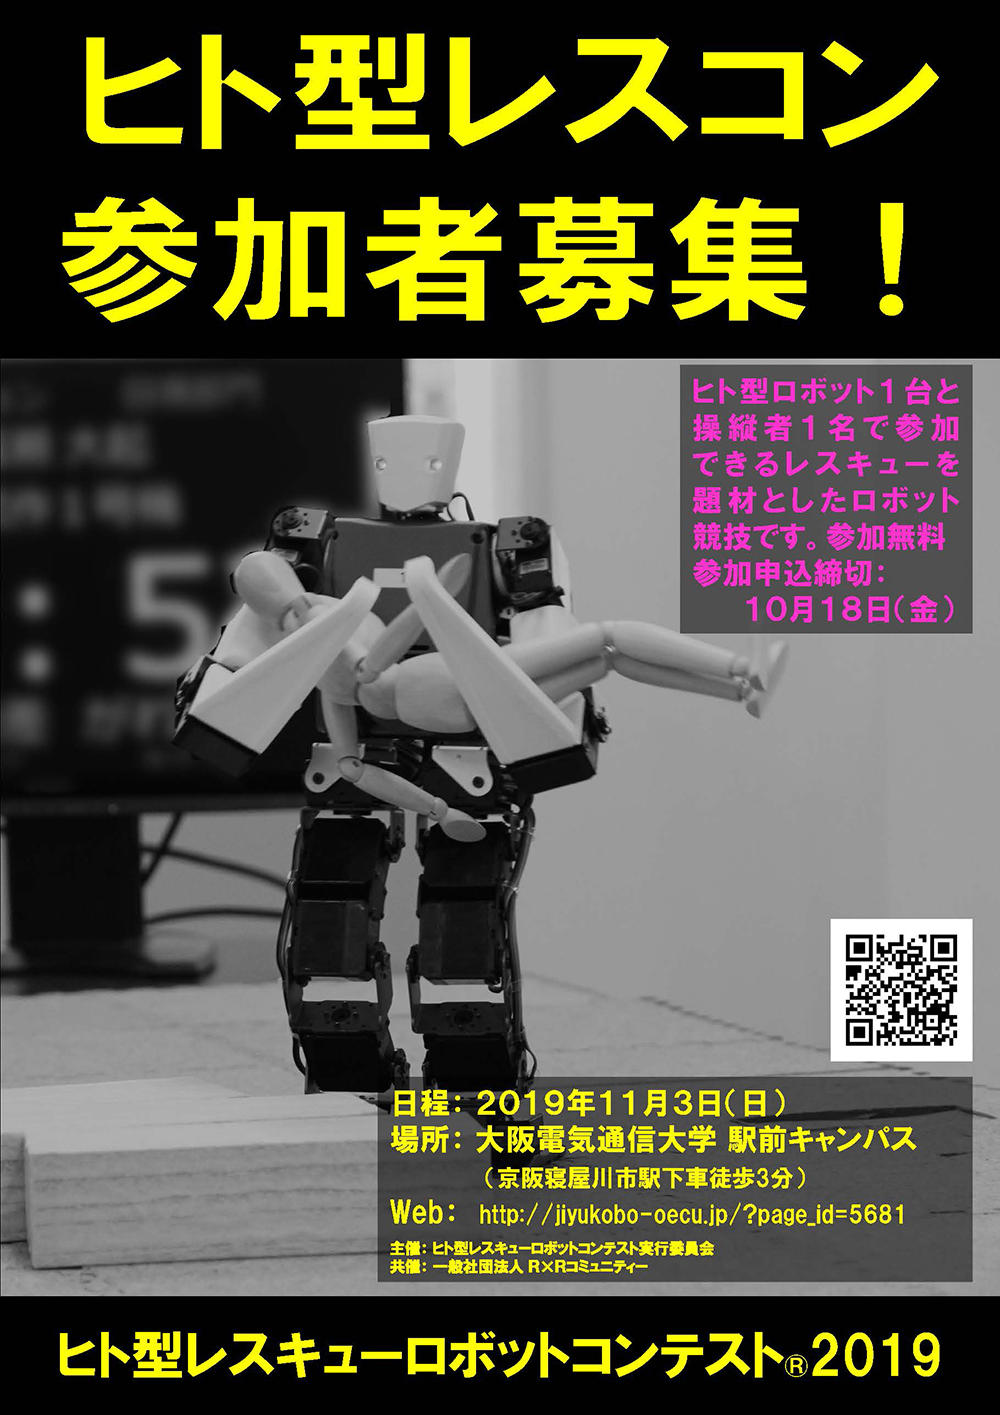 大阪電気通信大学で11月3日（日）に「ヒト型レスキューロボットコンテスト(R) 2019」を開催 -- 大学祭も同時開催